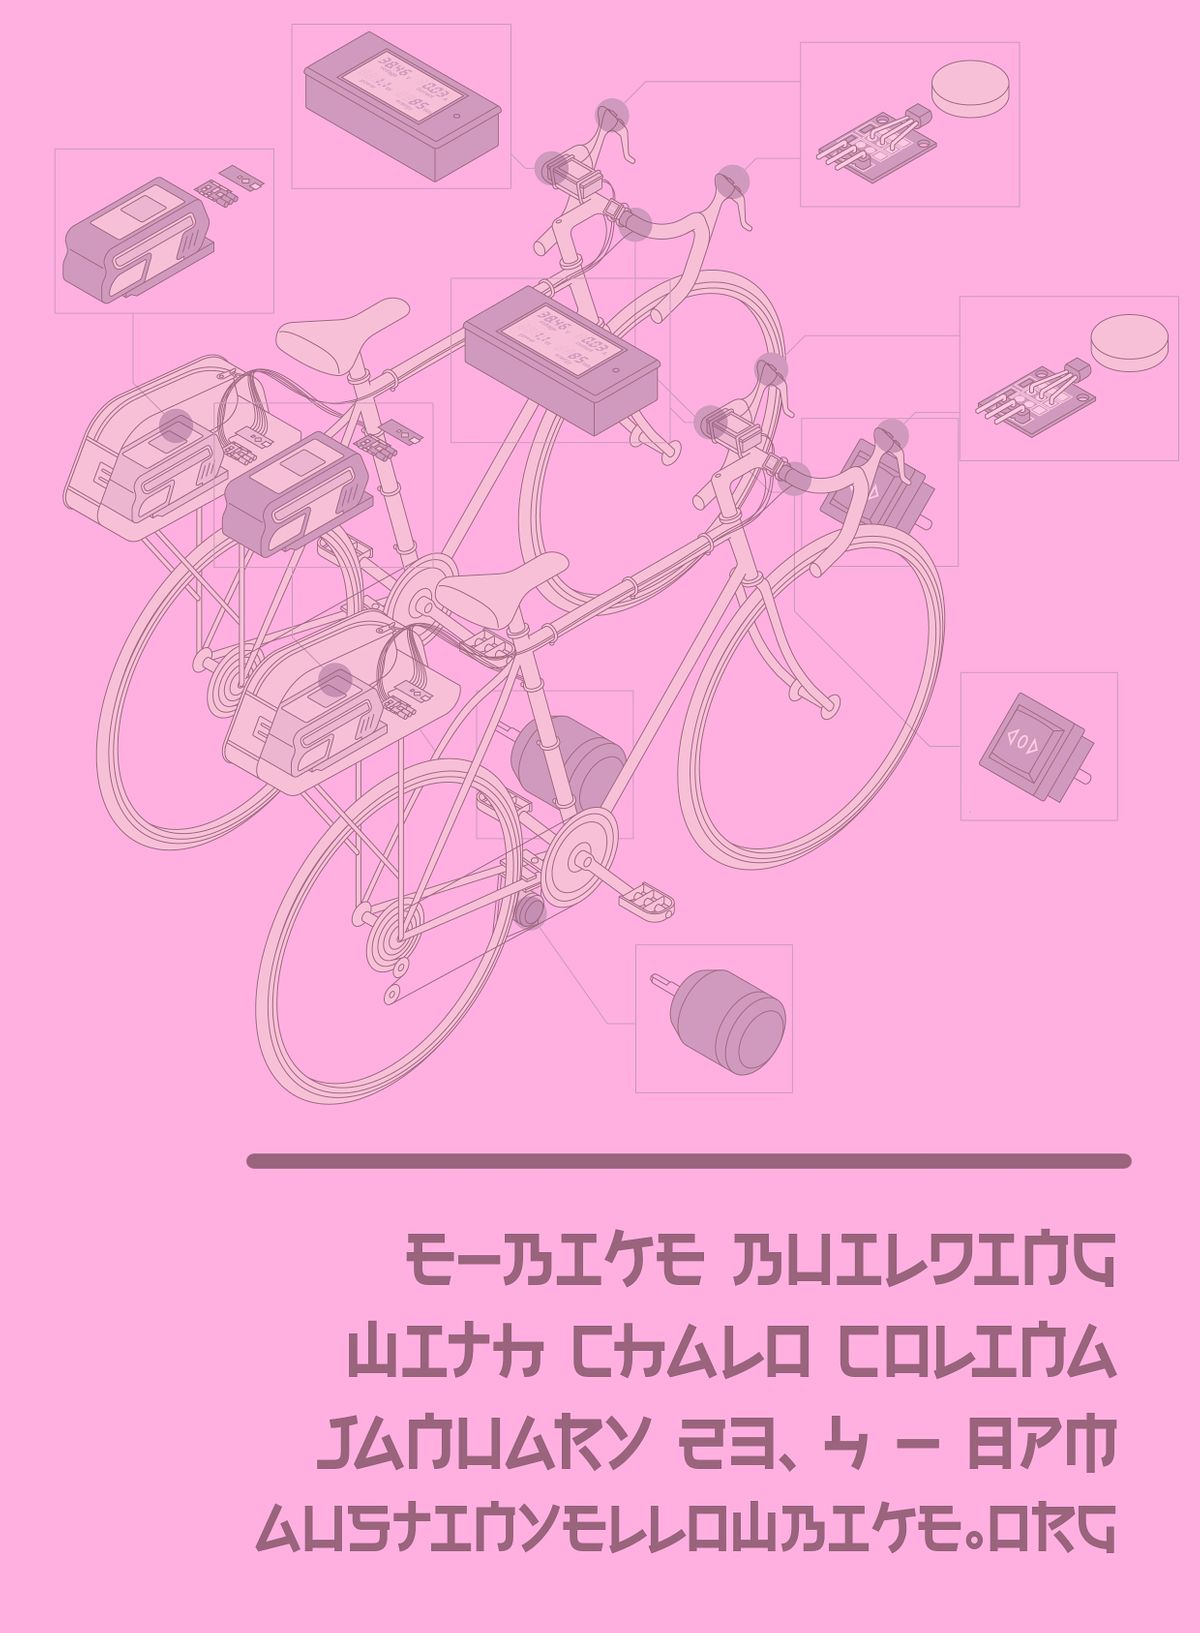 E-bike Building Seminar with Chalo Colina